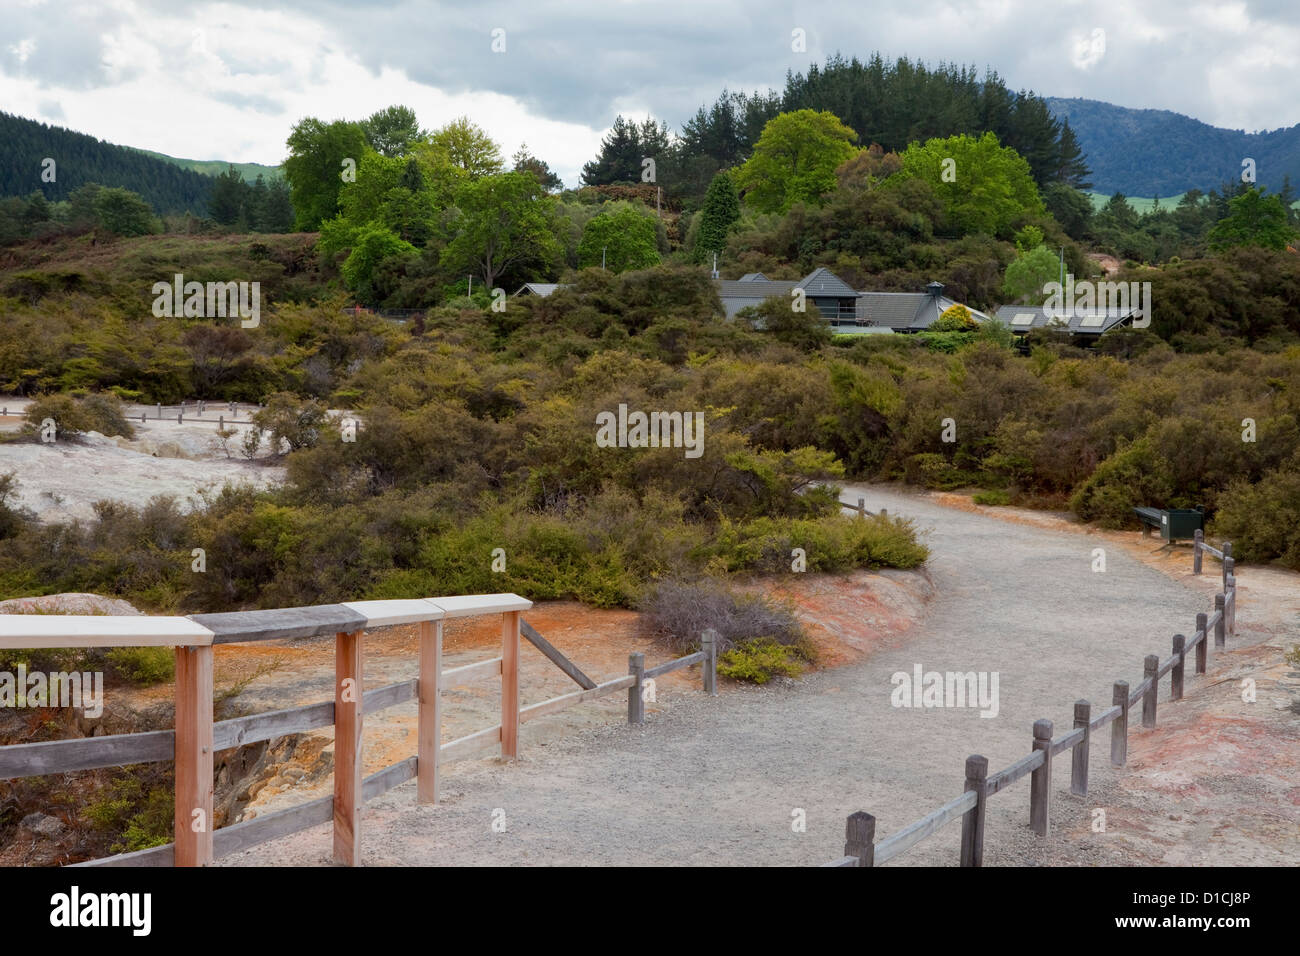 Waiotapu Besucher Center in seine natürliche Umgebung einfügt. Waiotapu Thermal Site, Rotorua Bereich, Nordinsel, Neuseeland. Stockfoto